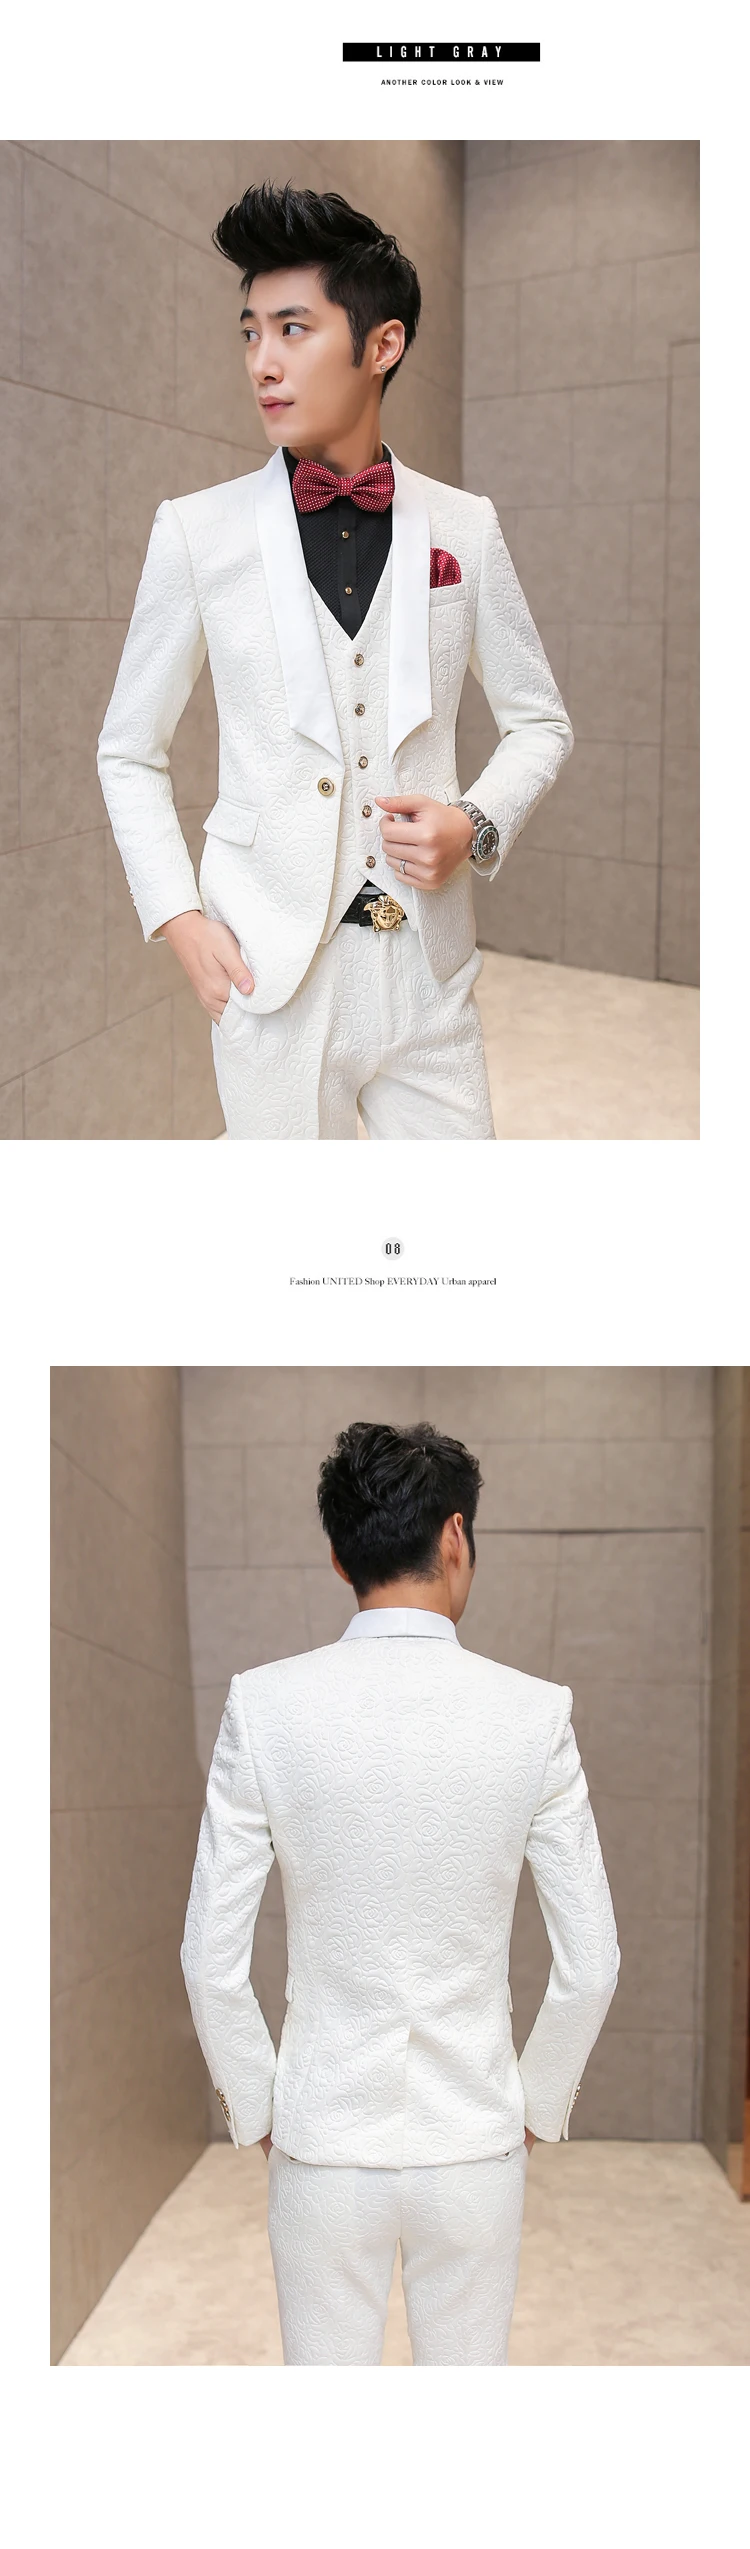 Белые Свадебные смокинги для мужчин, брендовые элегантные винтажные костюмы с принтом розы, Мужской приталенный костюм жениха на выпускной, пиджак+ жилет+ брюки